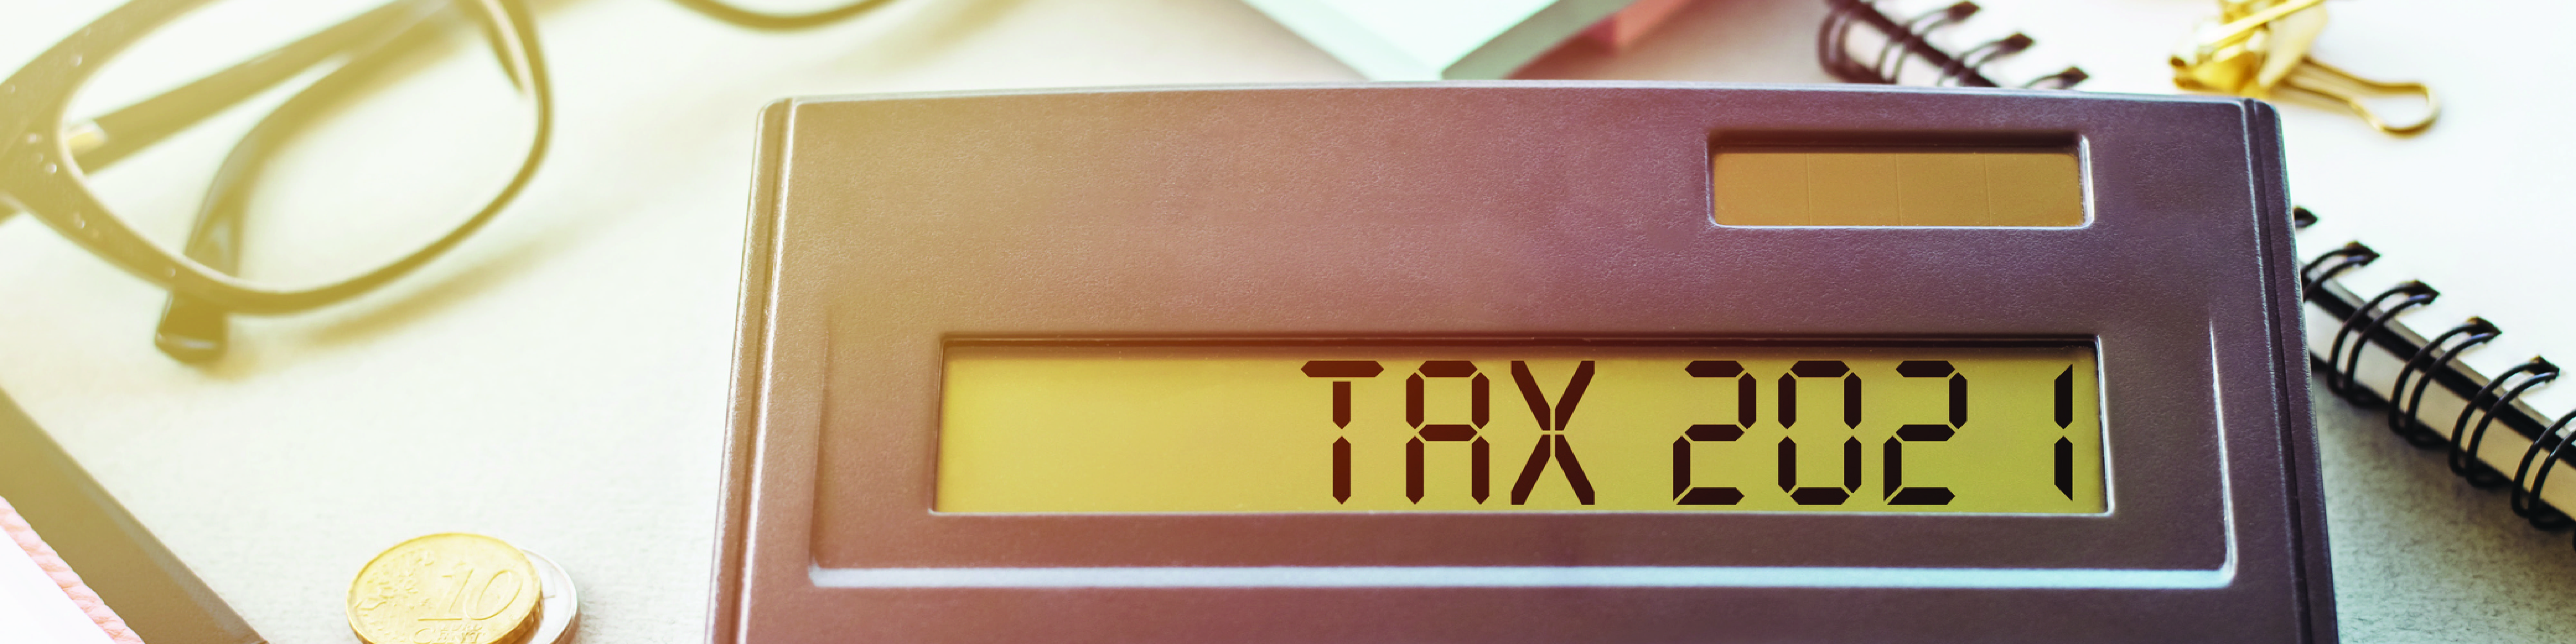 Tax software enhancements 